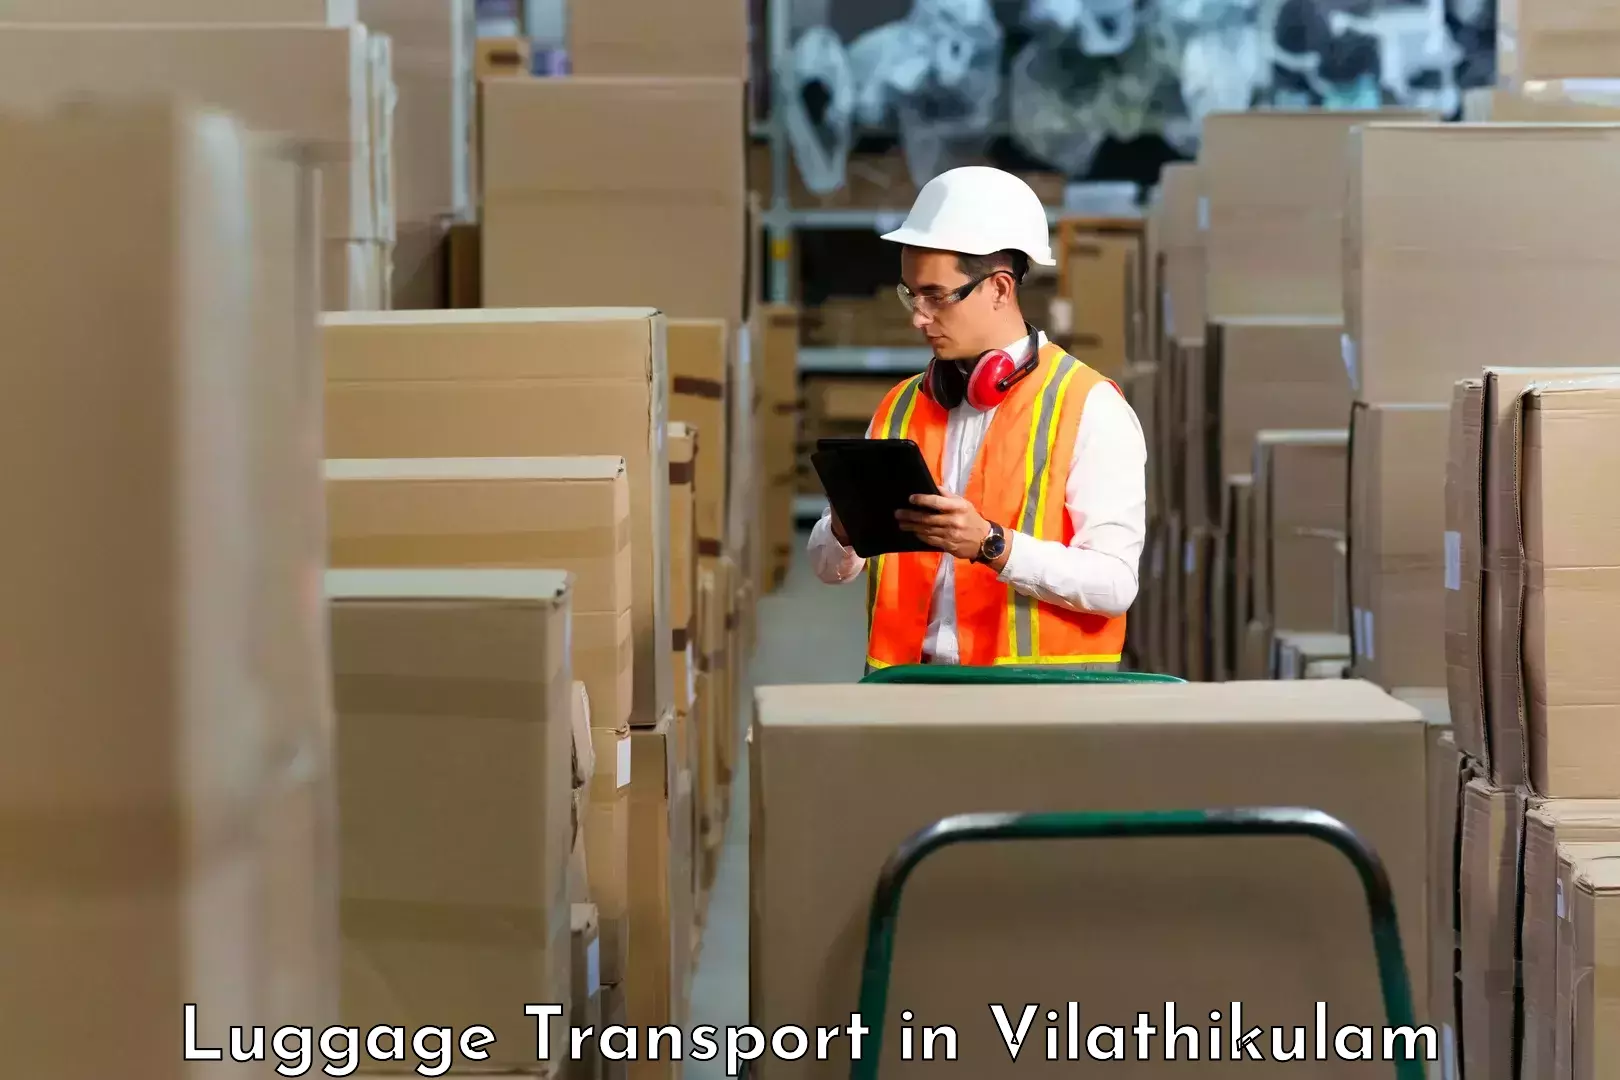 Luggage shipping consultation in Vilathikulam